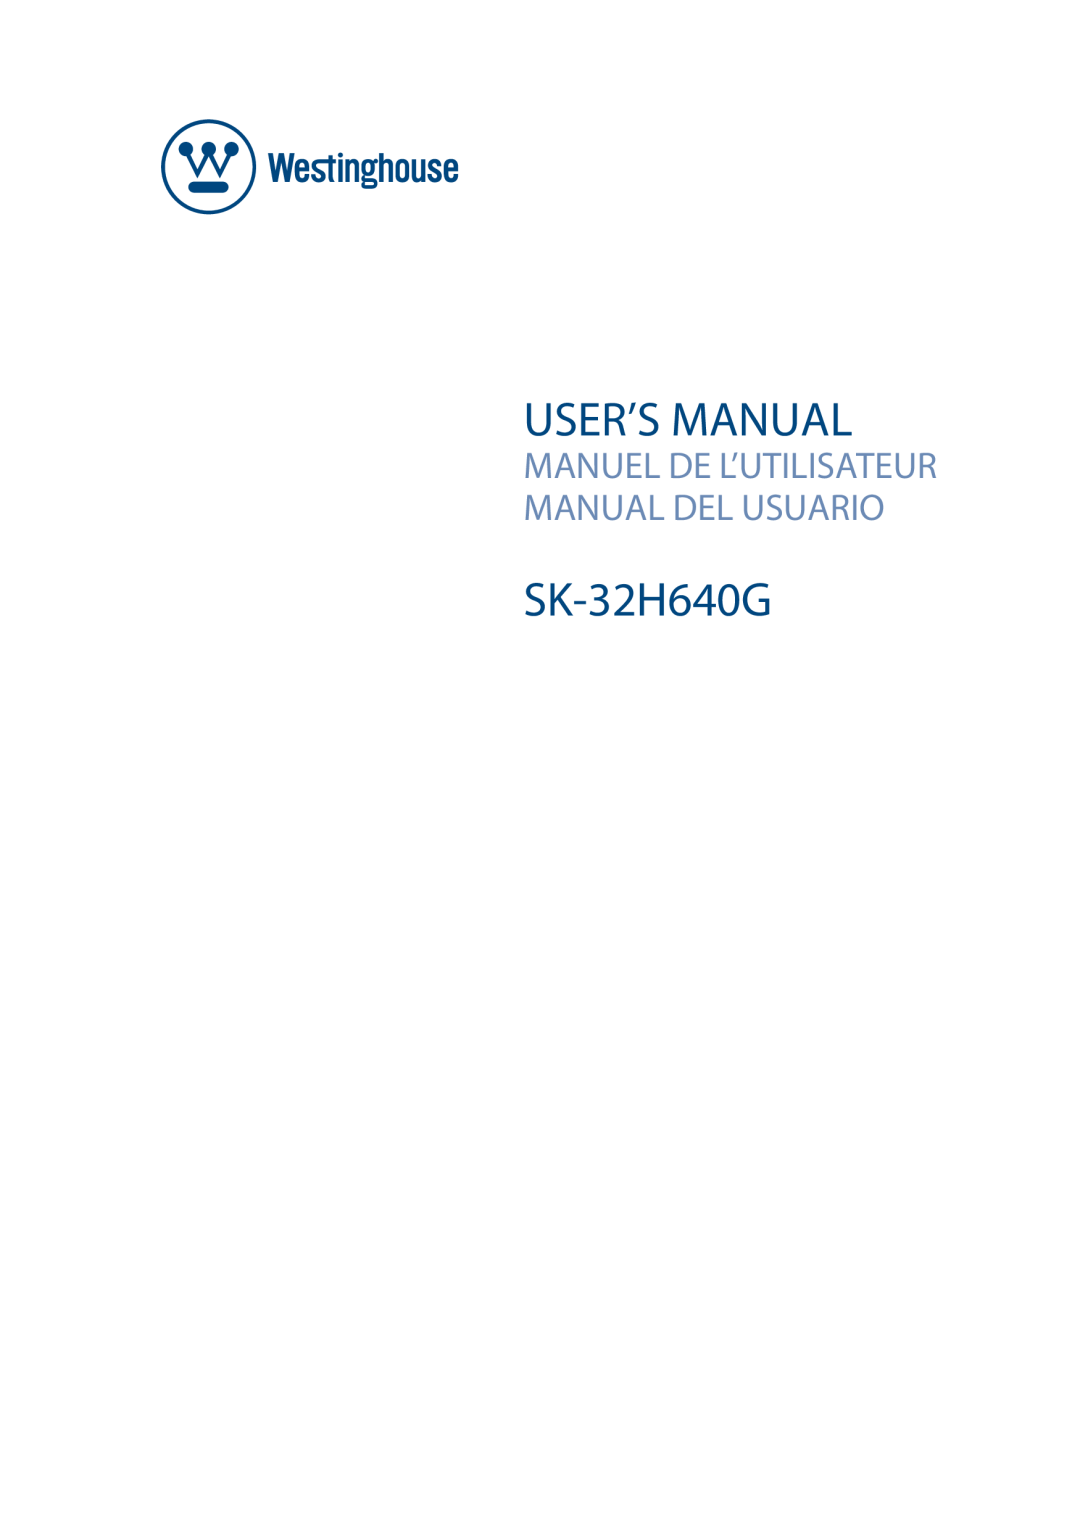 Westinghouse SK-32H640G user manual User’S Manual, Manuel De L’Utilisateur Manual Del Usuario 